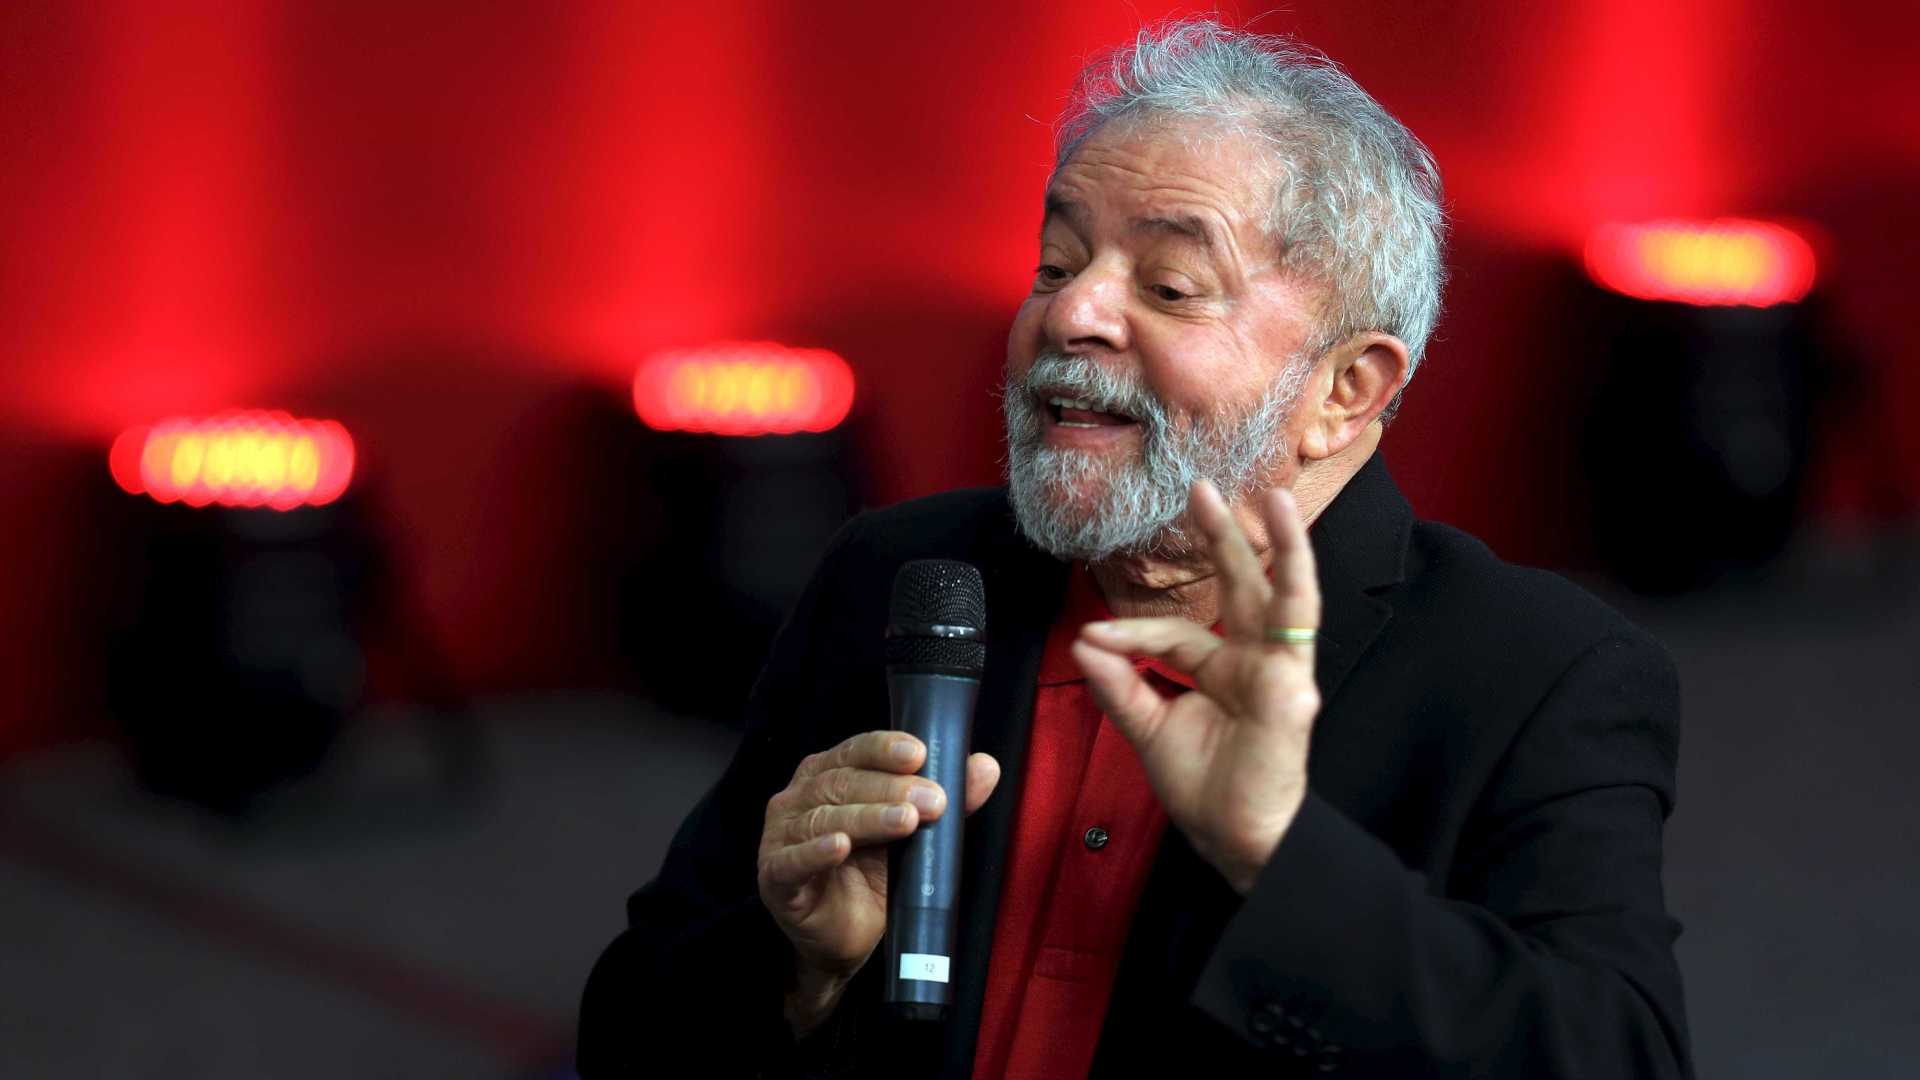 Depoimento: Lula critica denuncismo e diz estar cansado de mentiras